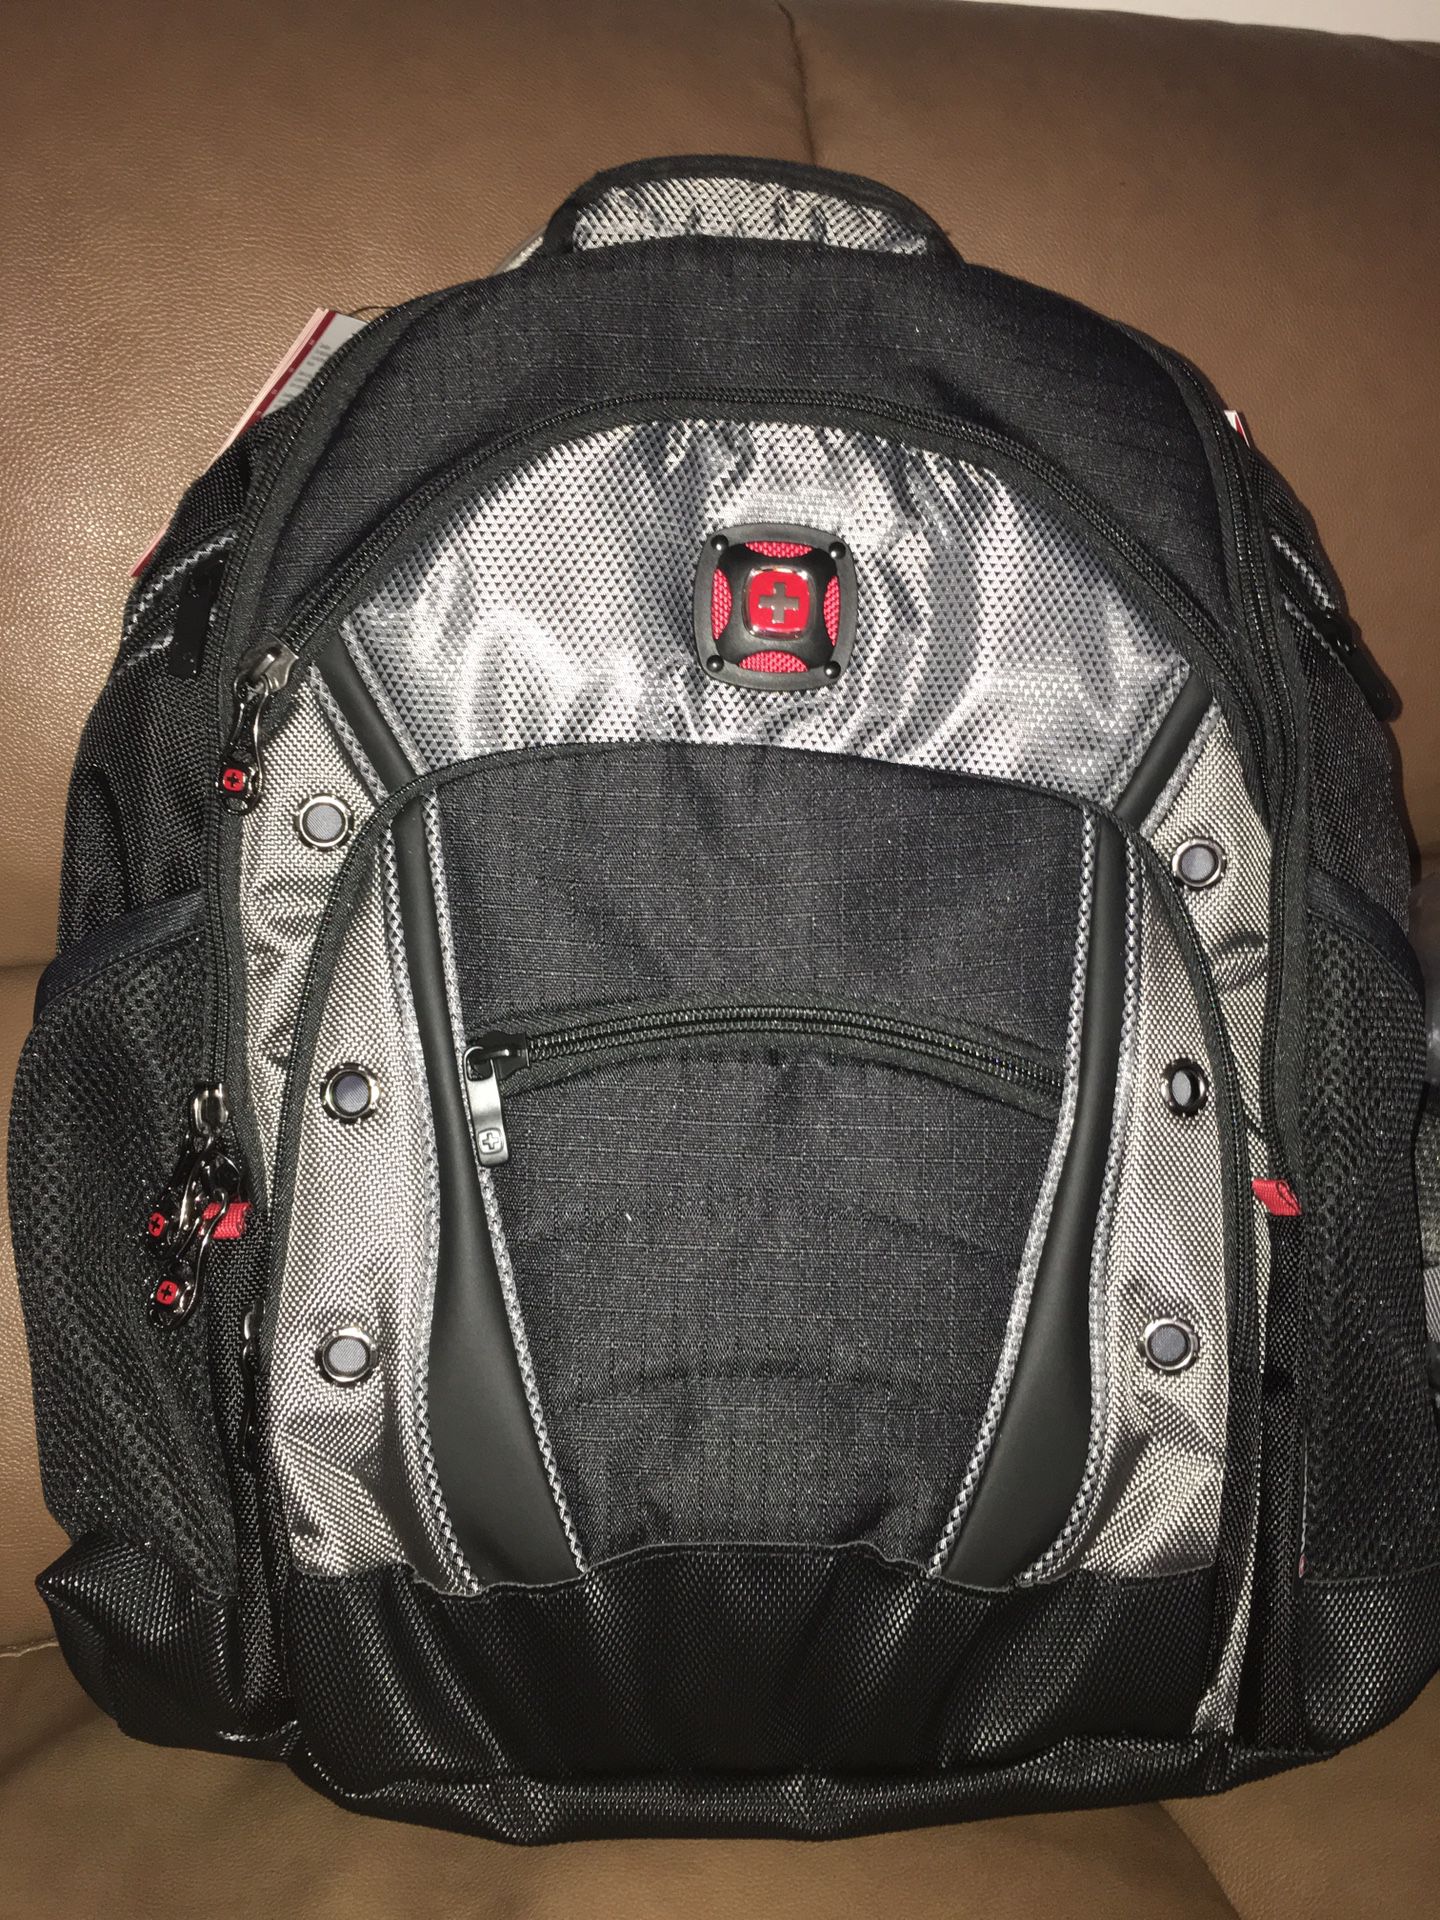 16” laptop backpack with tablet pocket WENGER